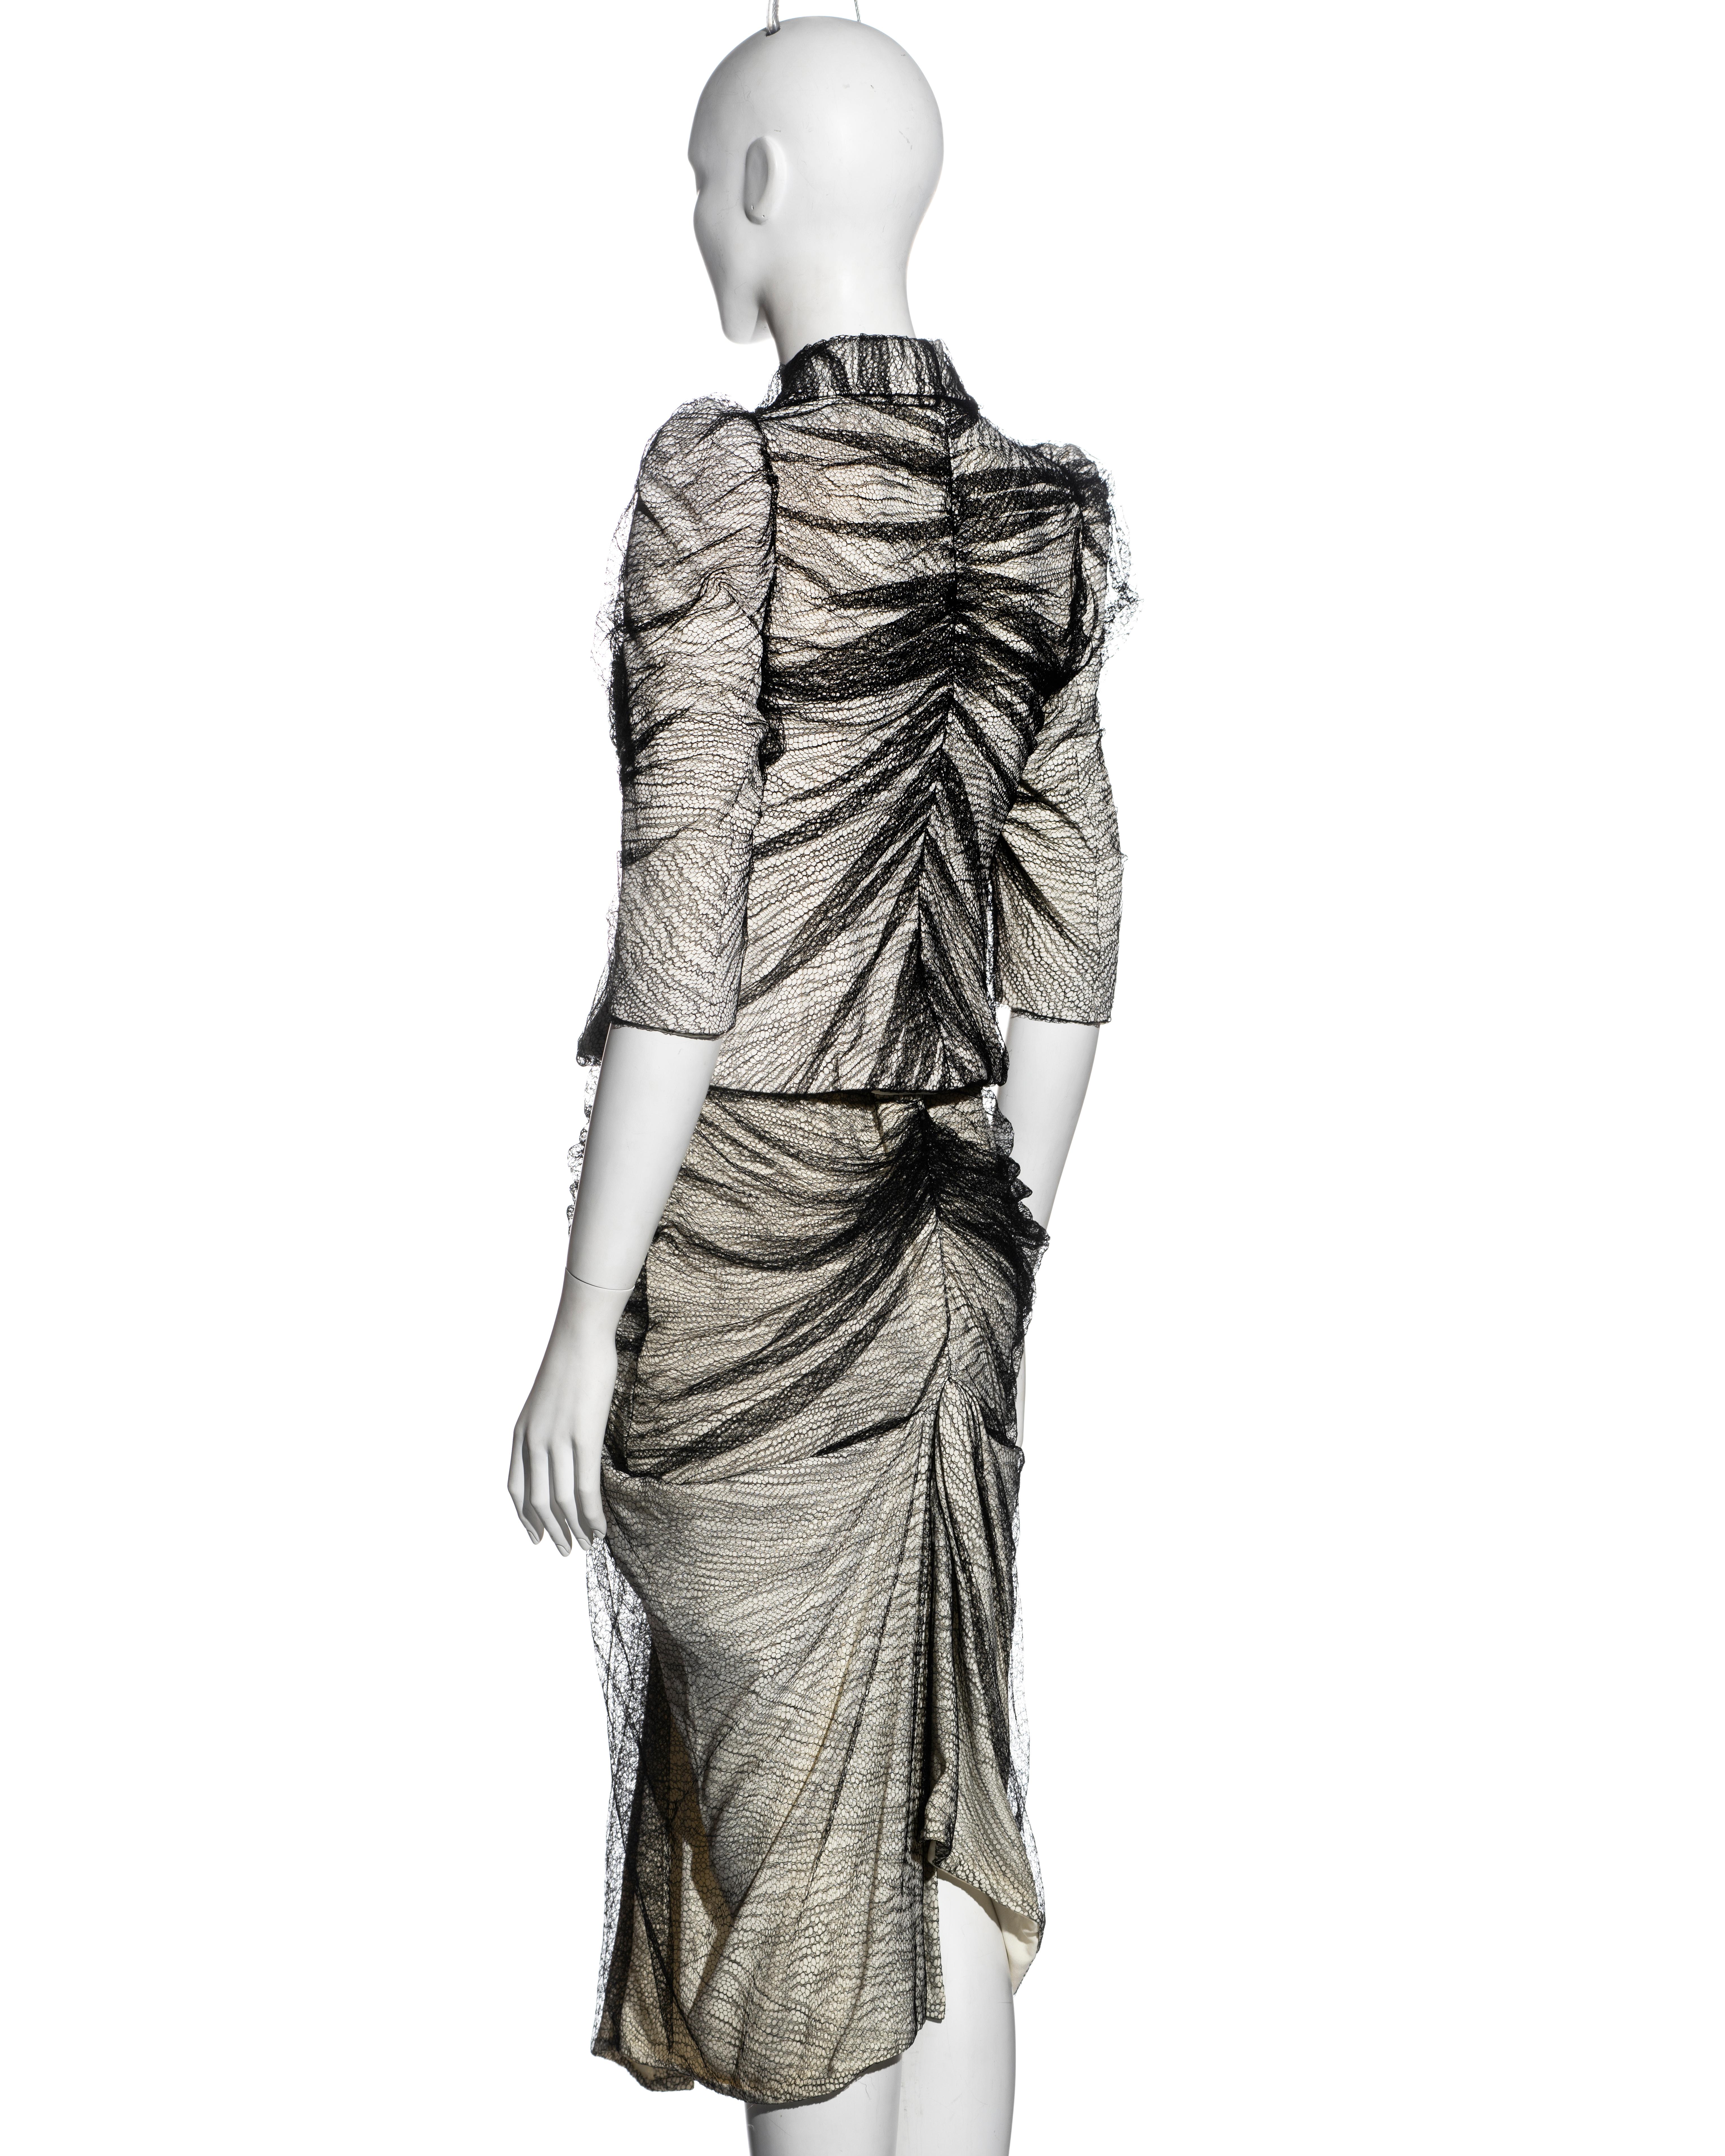 Alexander McQueen 'Sarabande' skirt suit, ss 2007 3